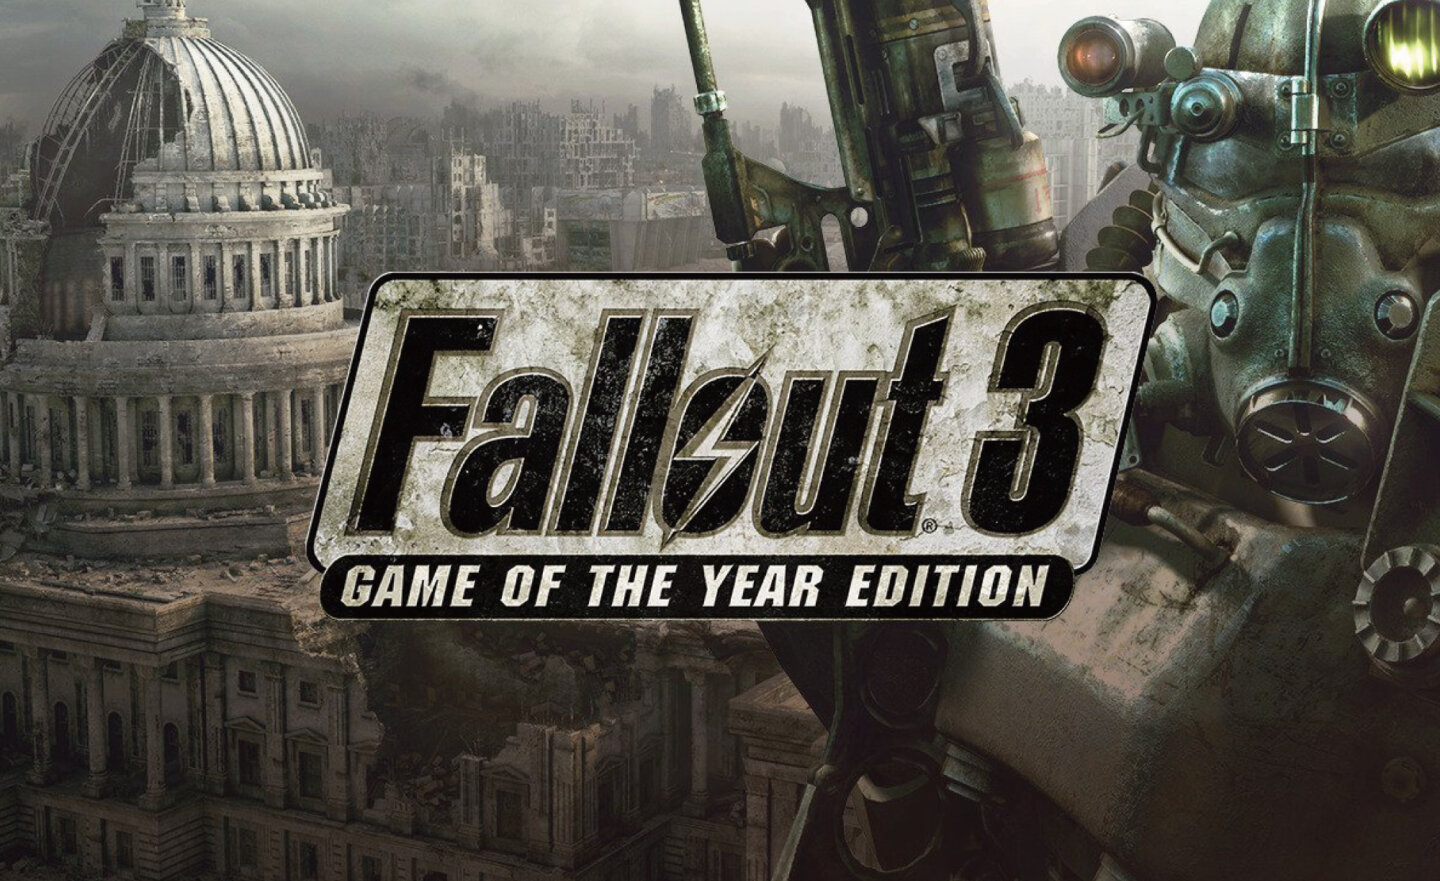 【限時免費】《Fallout 3 異塵餘生3》年度最佳遊戲版放送中，2023 年 12 月 25日凌晨 00:00 截止